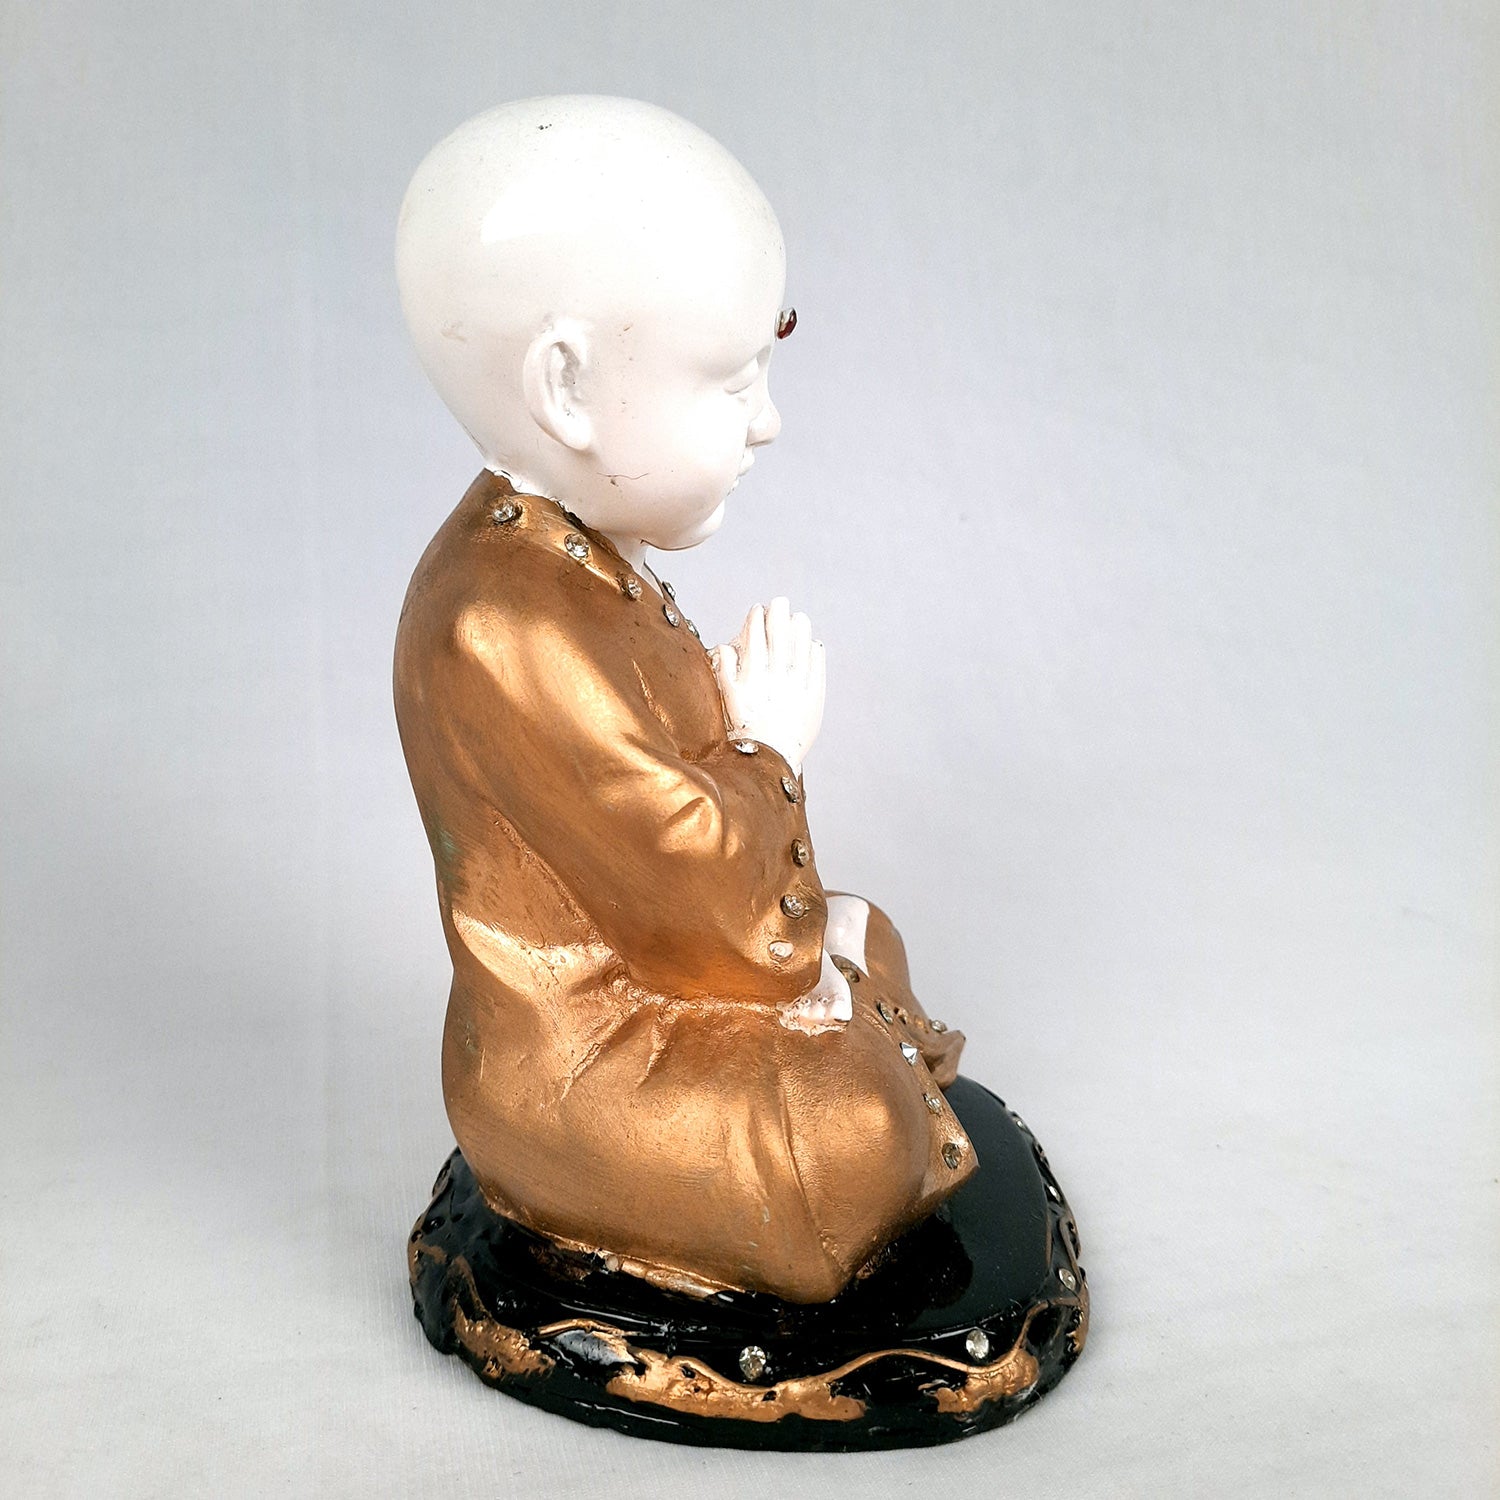 Baby Monk Showpiece - for Home & Garden Decor - 8 Inch-Apkamart #Style_Design 2